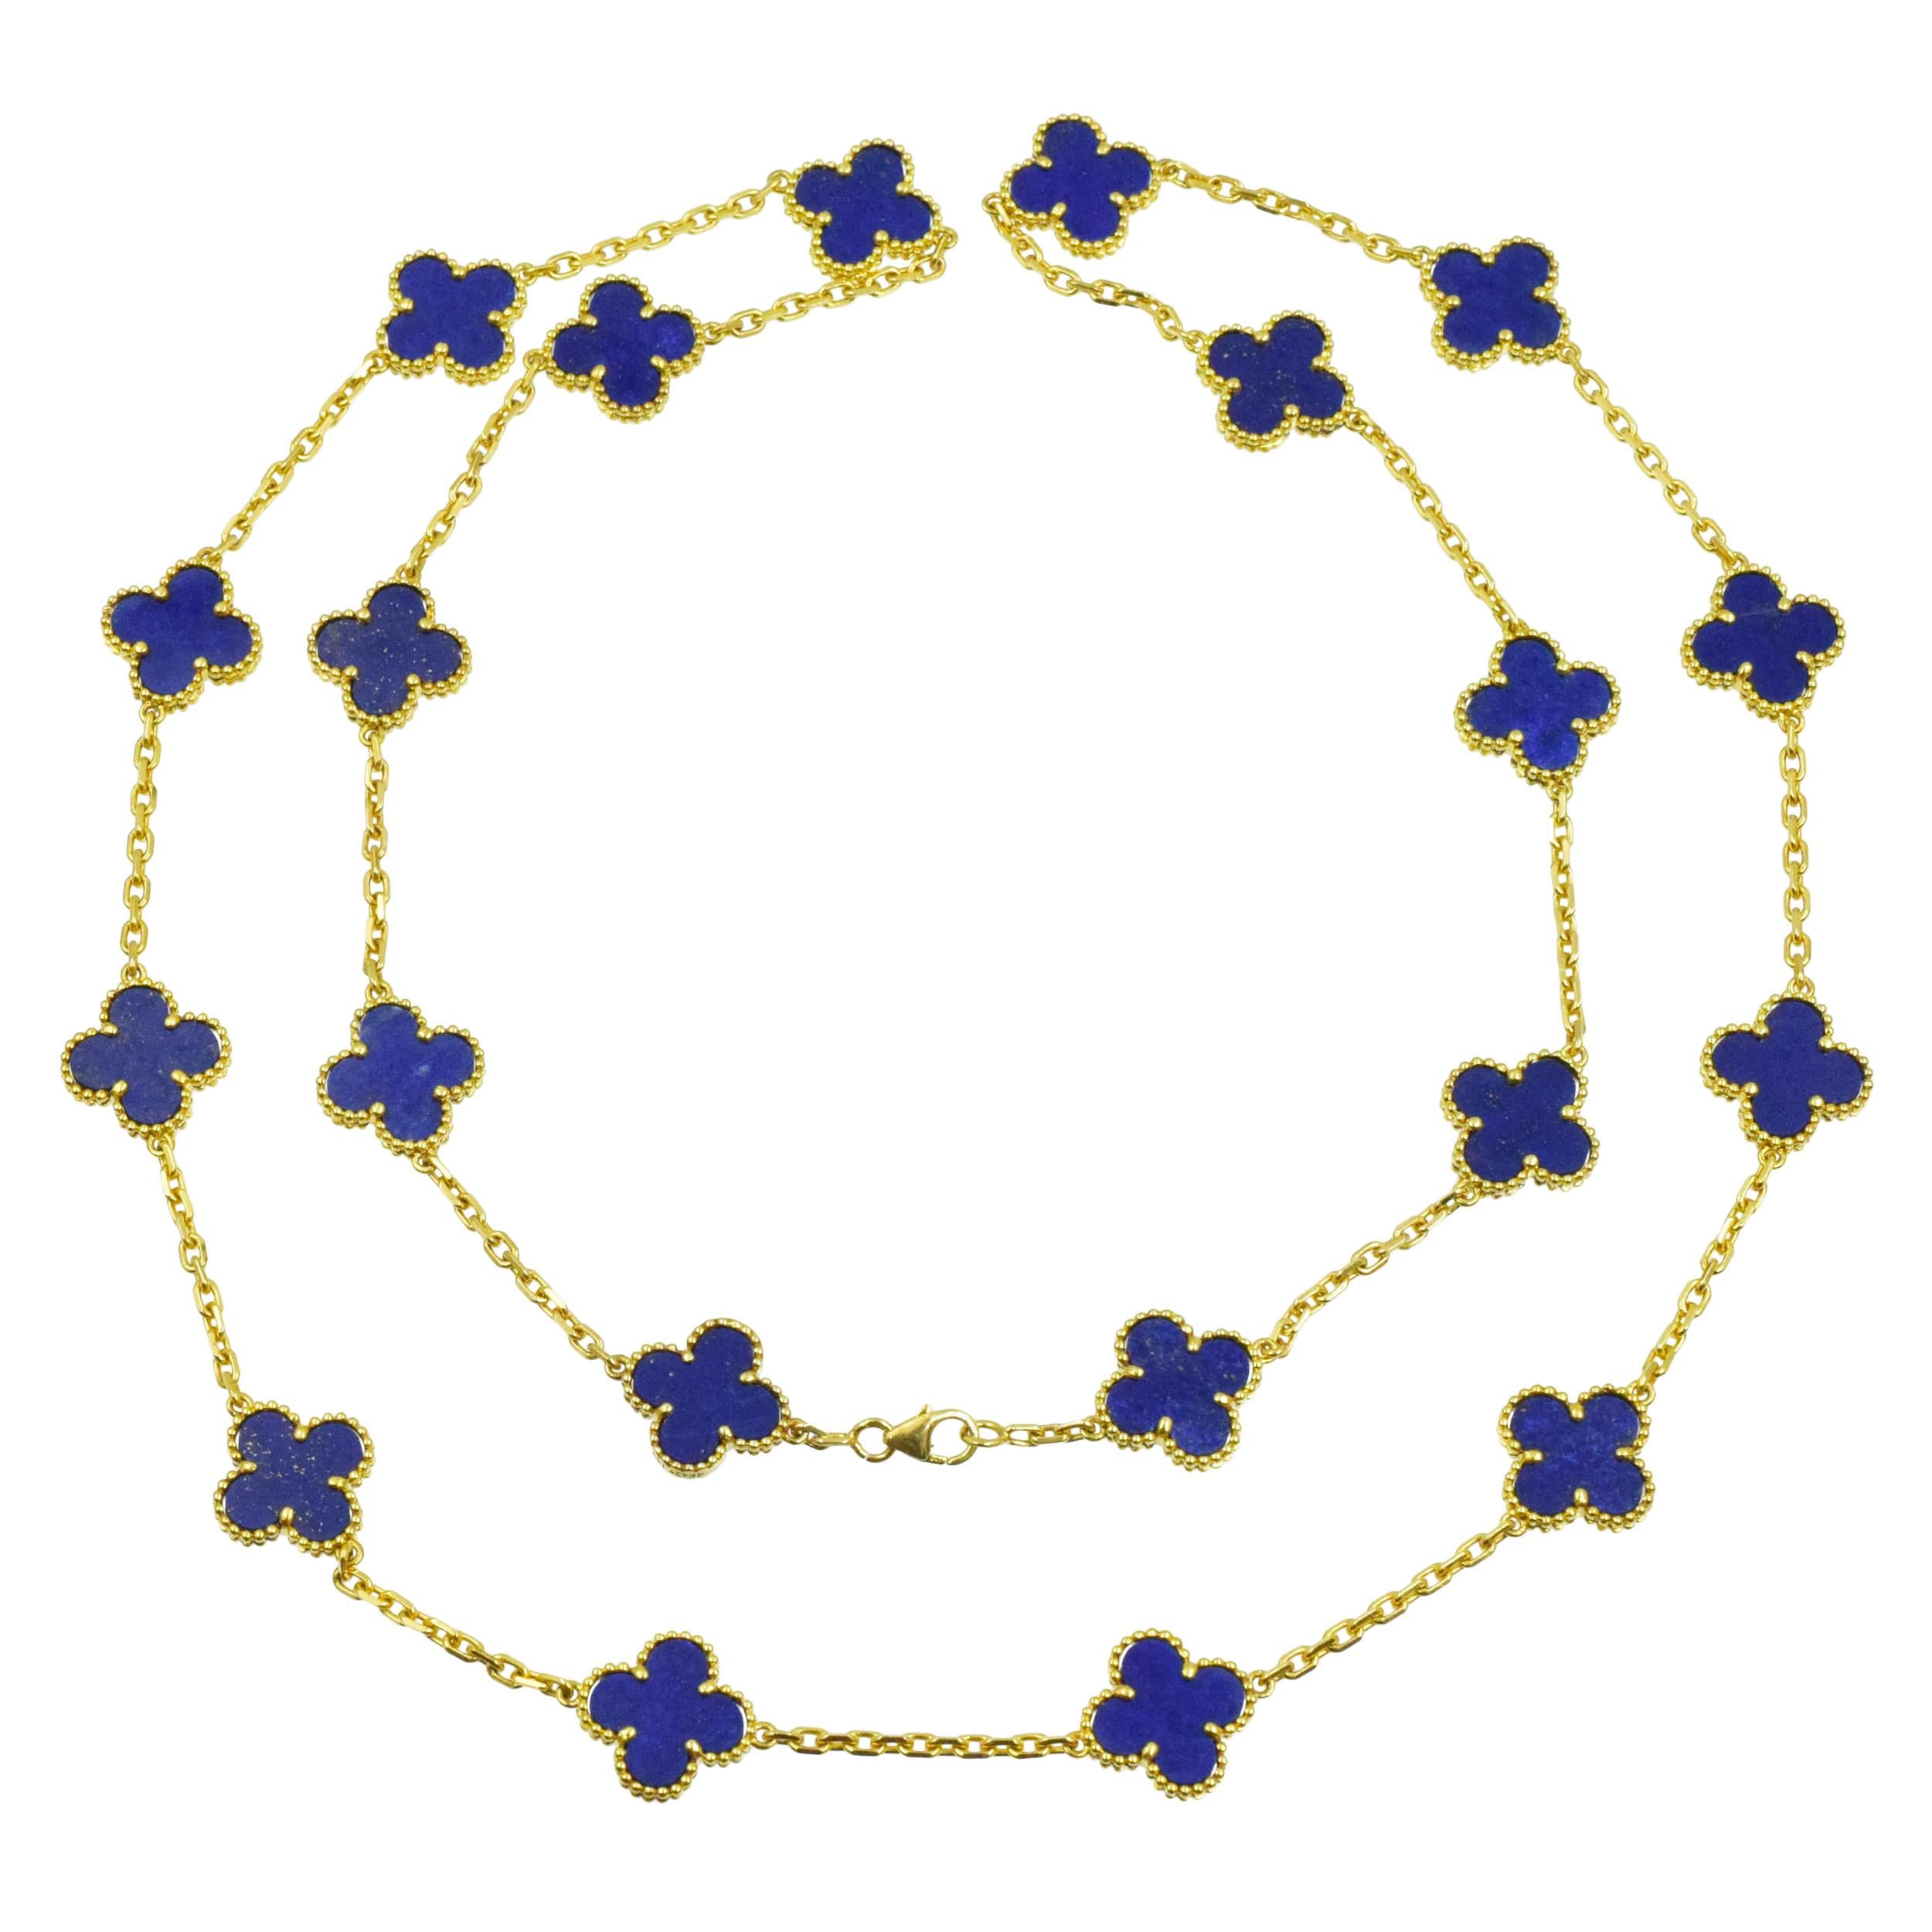 VCA Lapis Lazuli Vintage Alhambra Necklace in 18k
l'or jaune. Le collier comporte 20 motifs de trèfle en lapis-lazuli. Équipé d'un fermoir en forme de homard. Inscrit : VCA 750, 4K629.132. 
Estampillé avec des poinçons français et des marques de